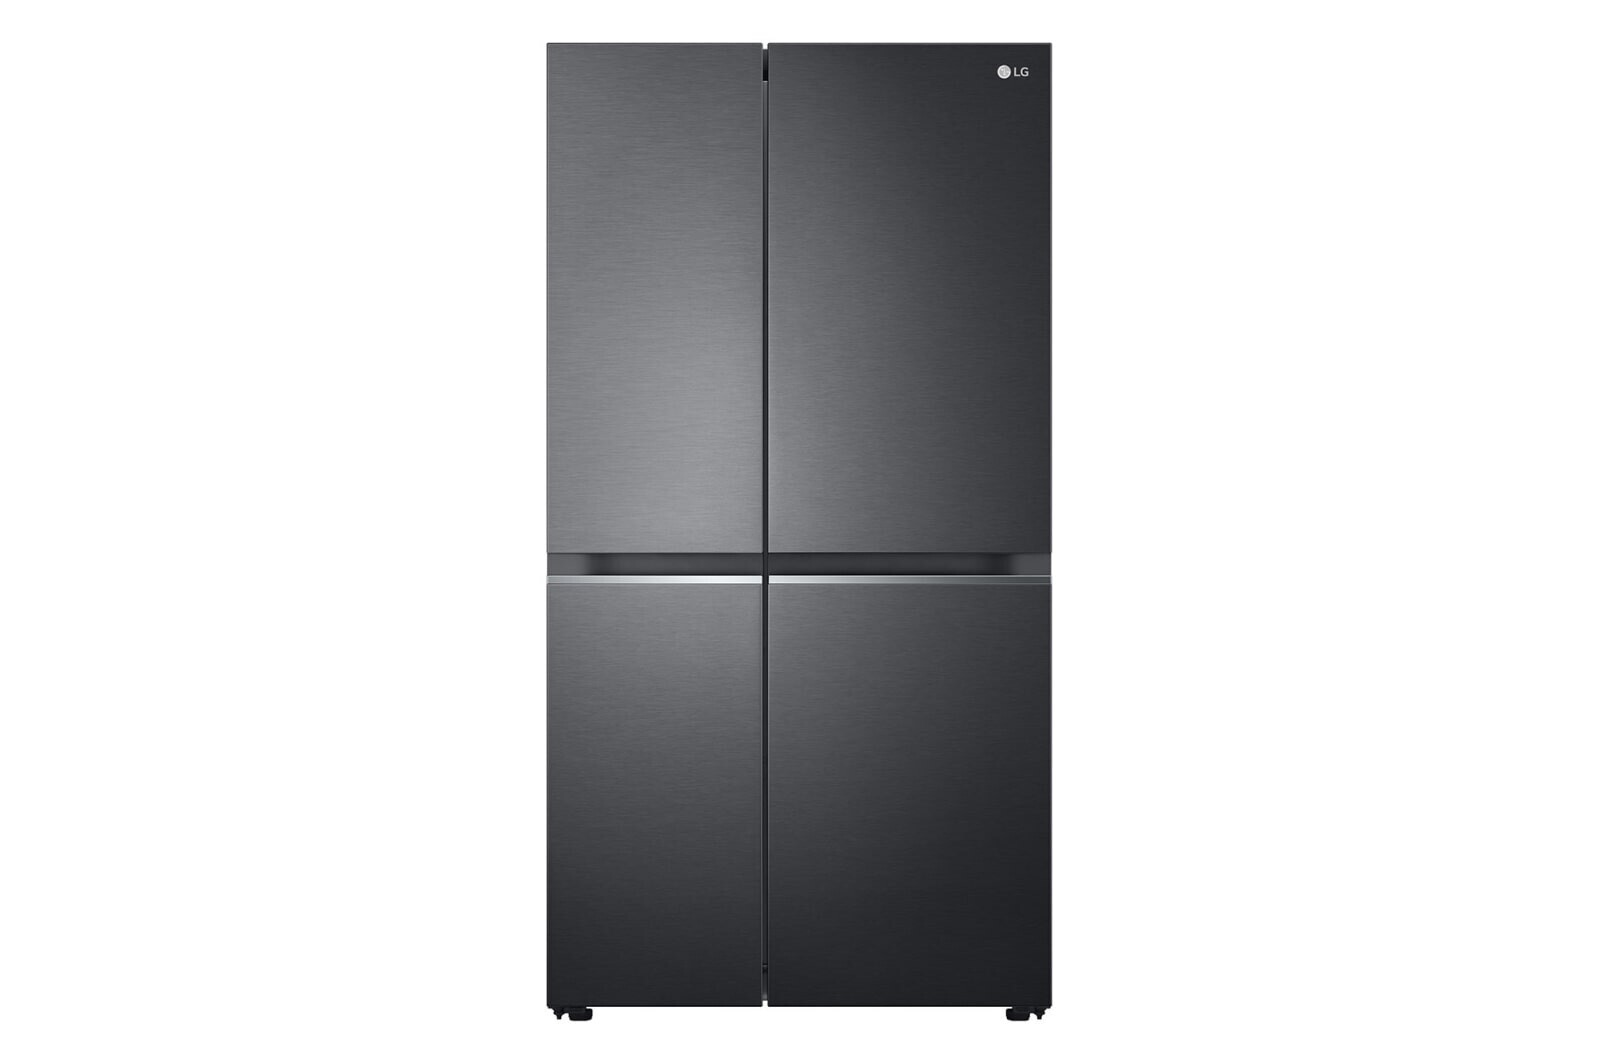 LG GC-b257sezv. Холодильник Side by Side LG GC-q257cbfc черный. Медея холодильник Сайд бай Сайд черный. Lg gc b257jeyv